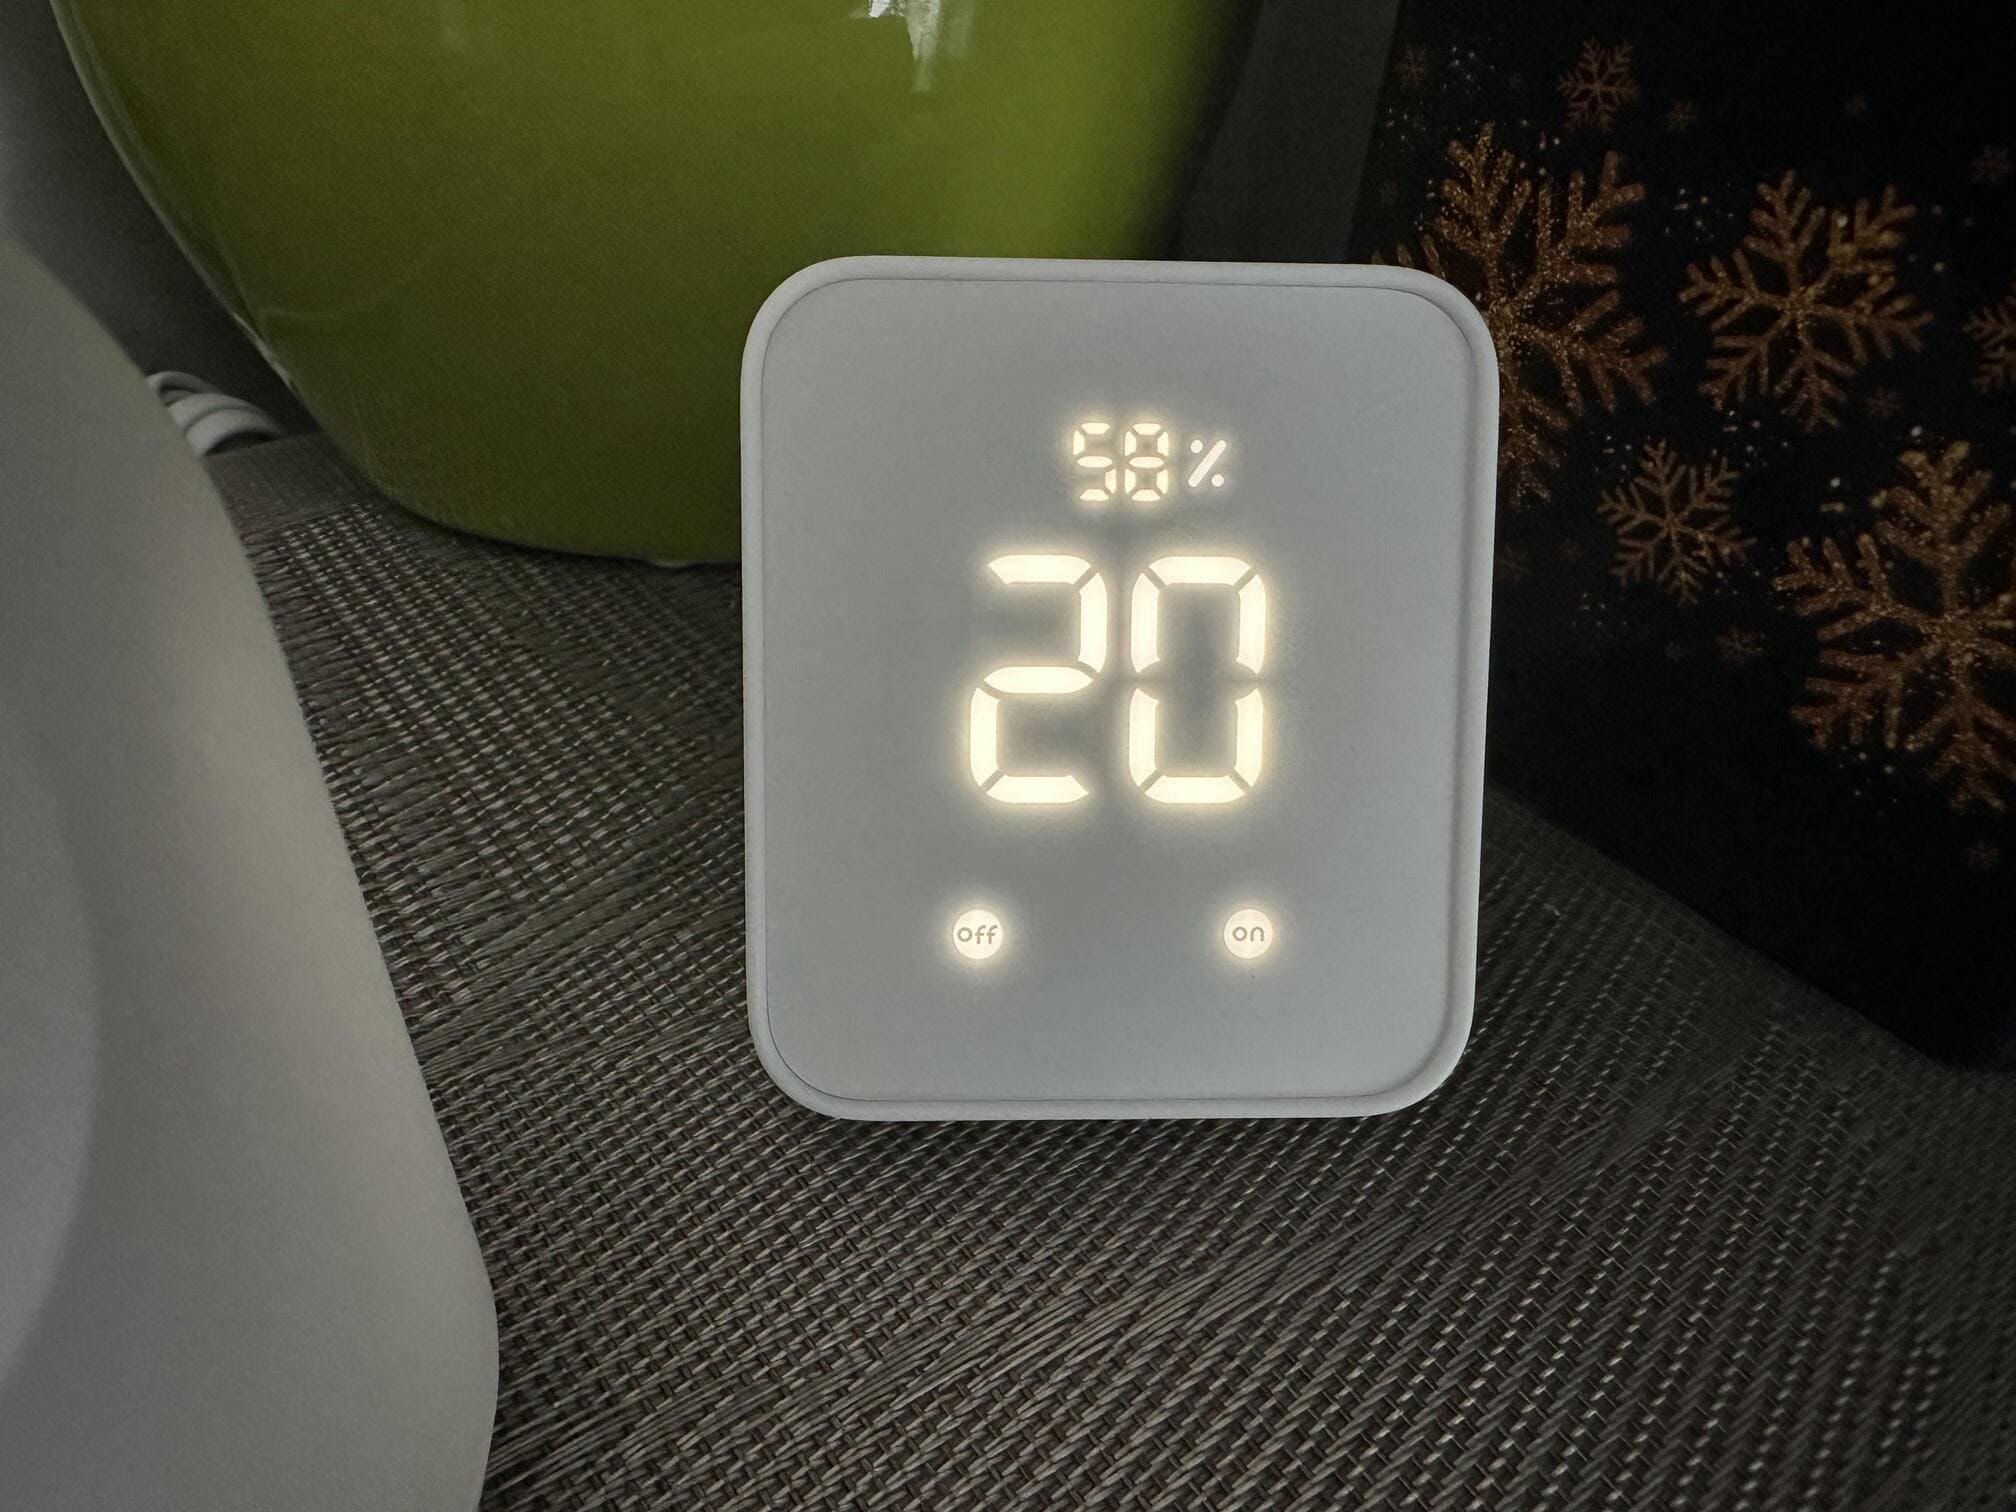 image Test de thermomètre connecté - économiser de l'énergie avec SwitchBot 30